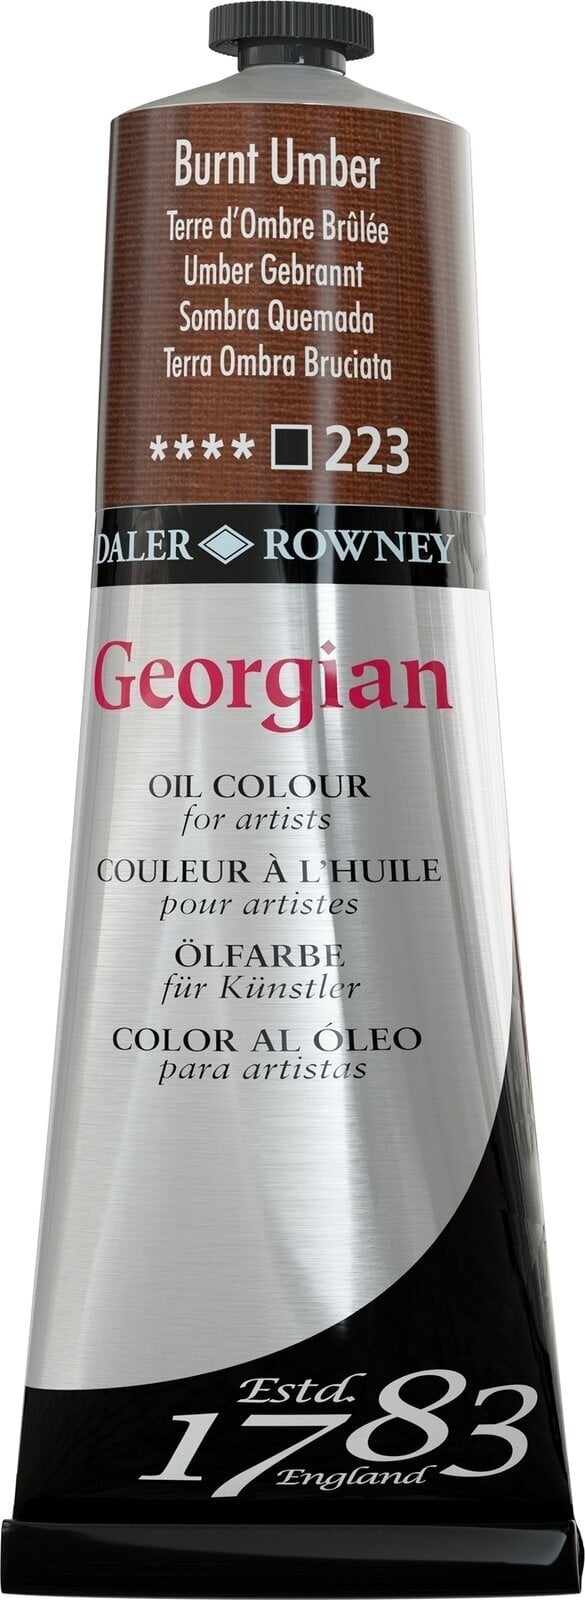 Oil colour Daler Rowney Georgian Oil Paint Burnt Umber 225 ml 1 pc